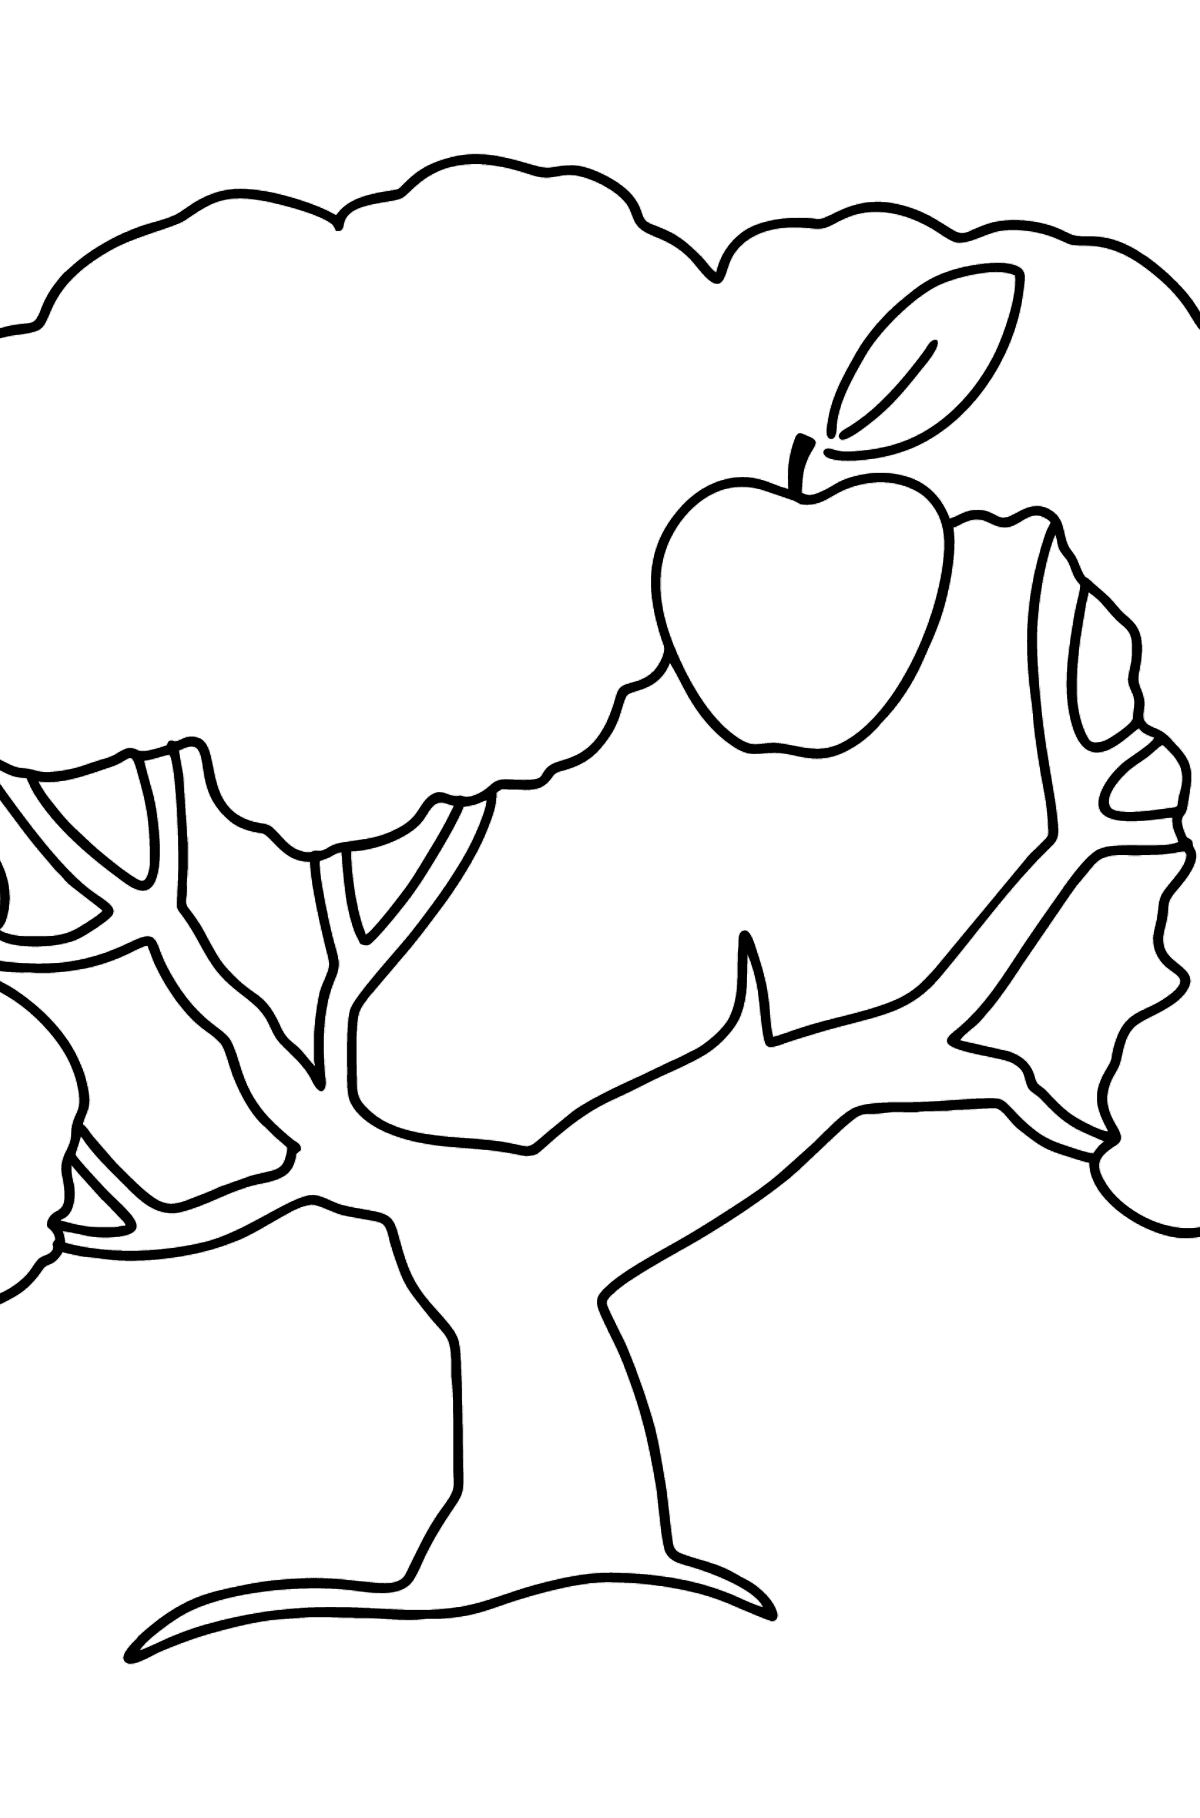 Раскраска яблоня просто - Картинки для Детей